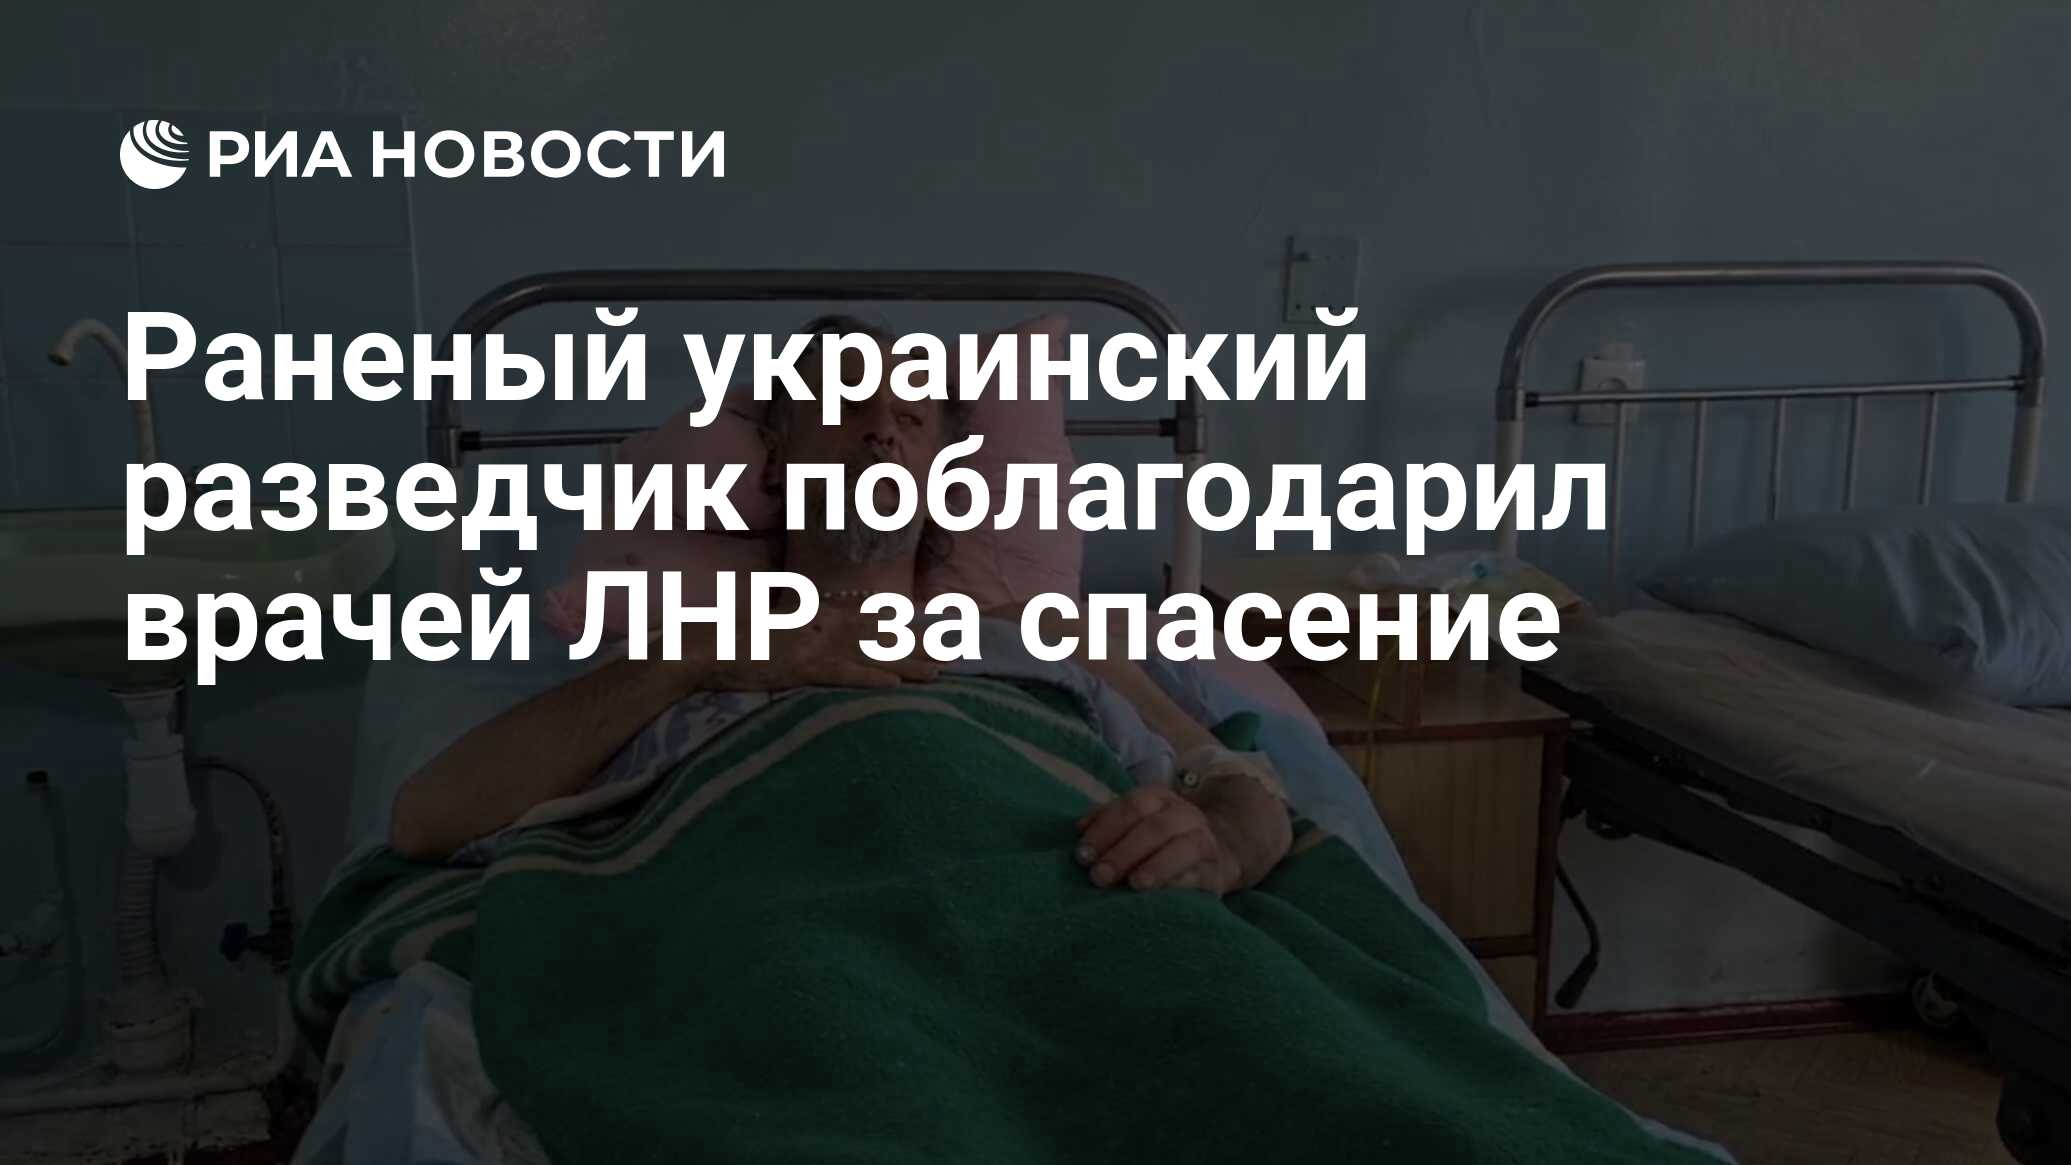 Раненый украинский разведчик поблагодарил врачей ЛНР за спасение